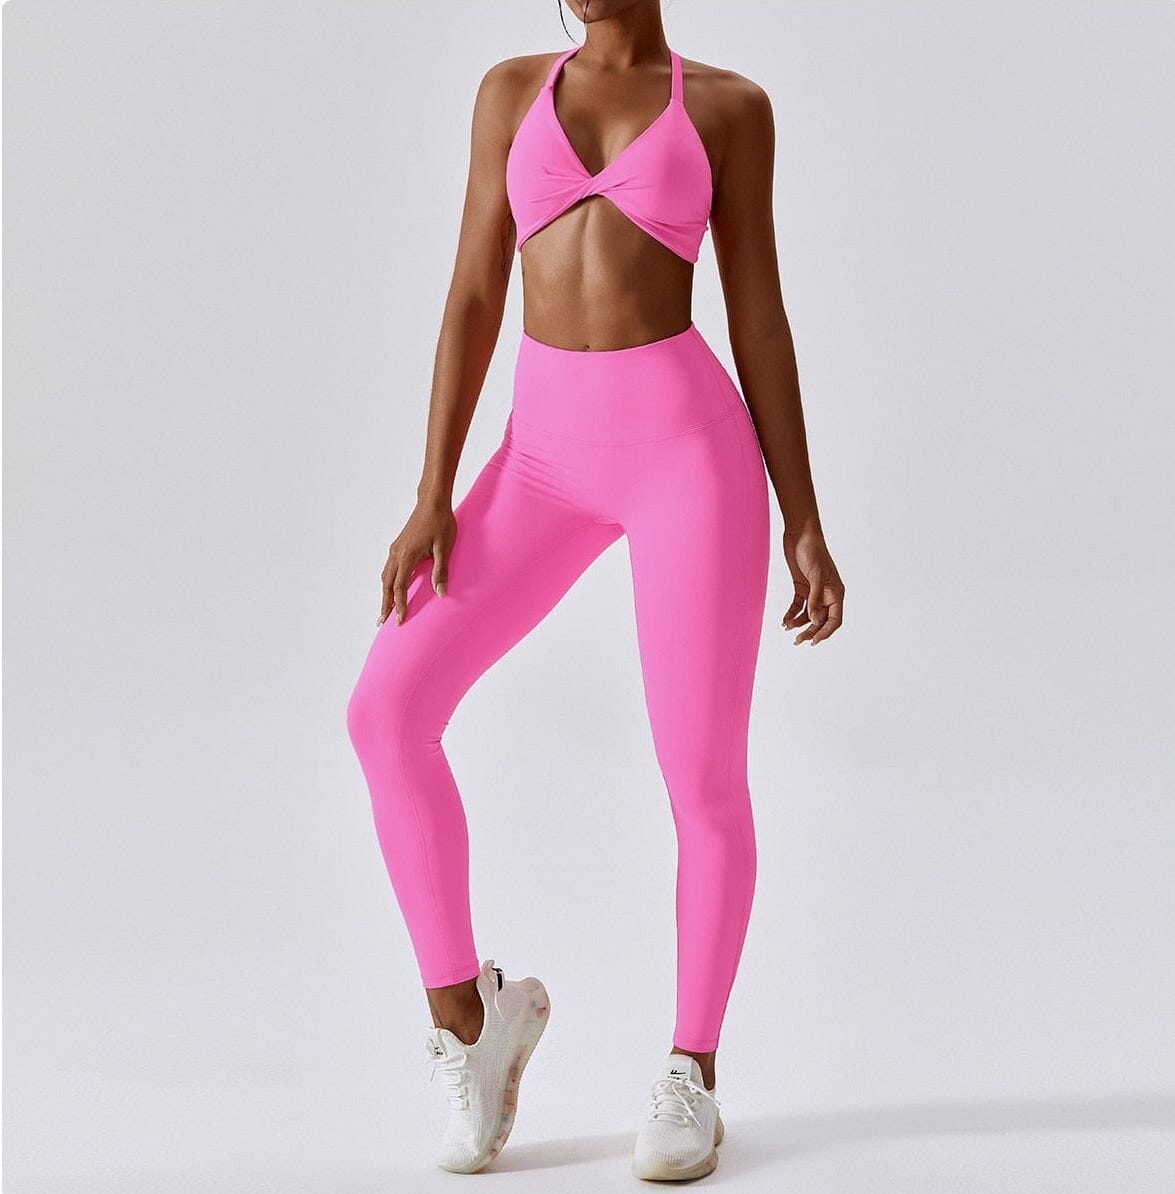 Crest Yoga Set - Leggings + Top Sets Starlethics Pink Pants Set S 